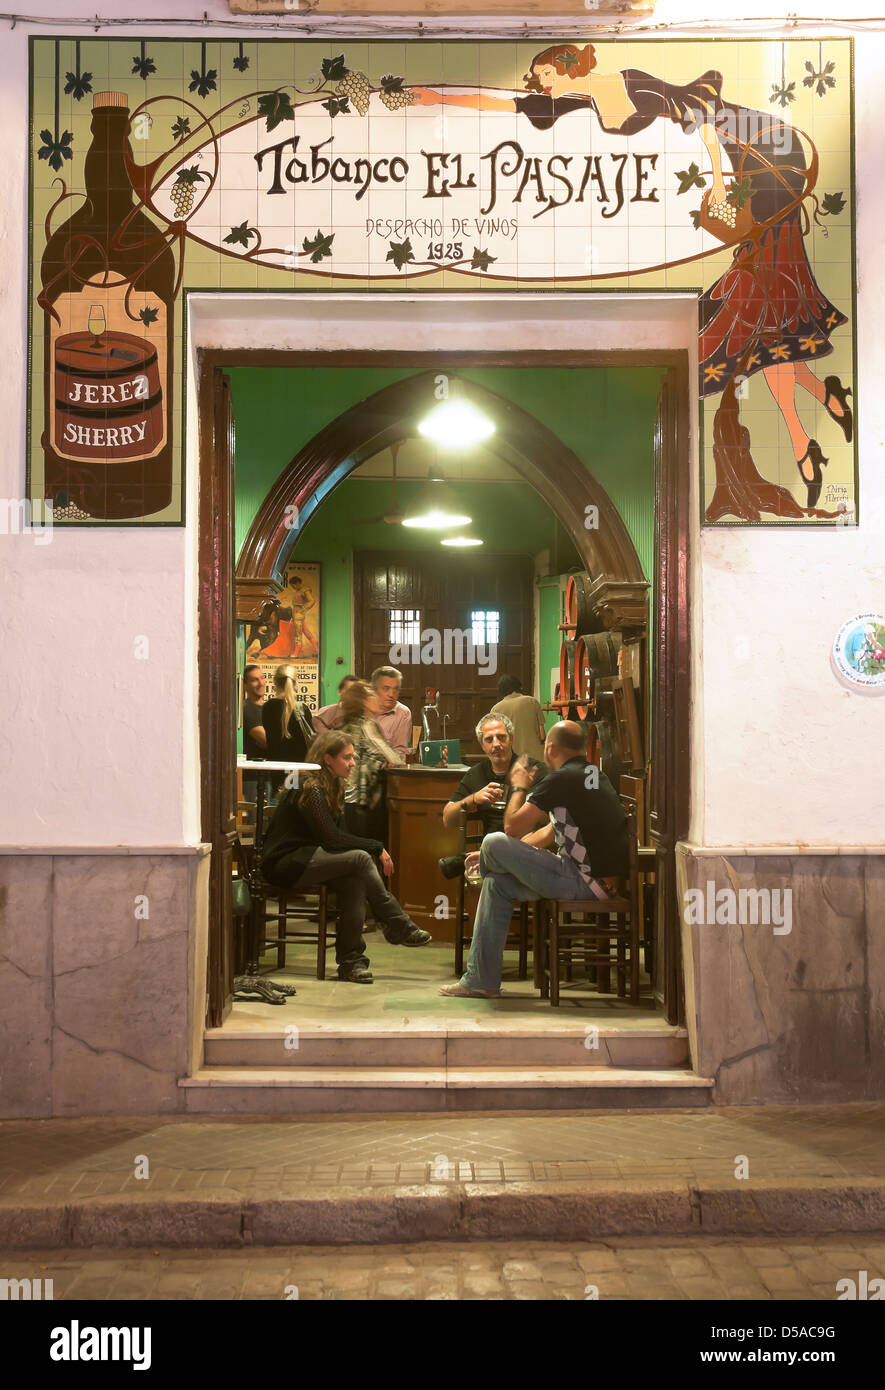 Taverne typique appelé "el tabanco pasaje' situé à jerez de la Frontera, province de Cadiz, Andalousie, Espagne, Europe Banque D'Images